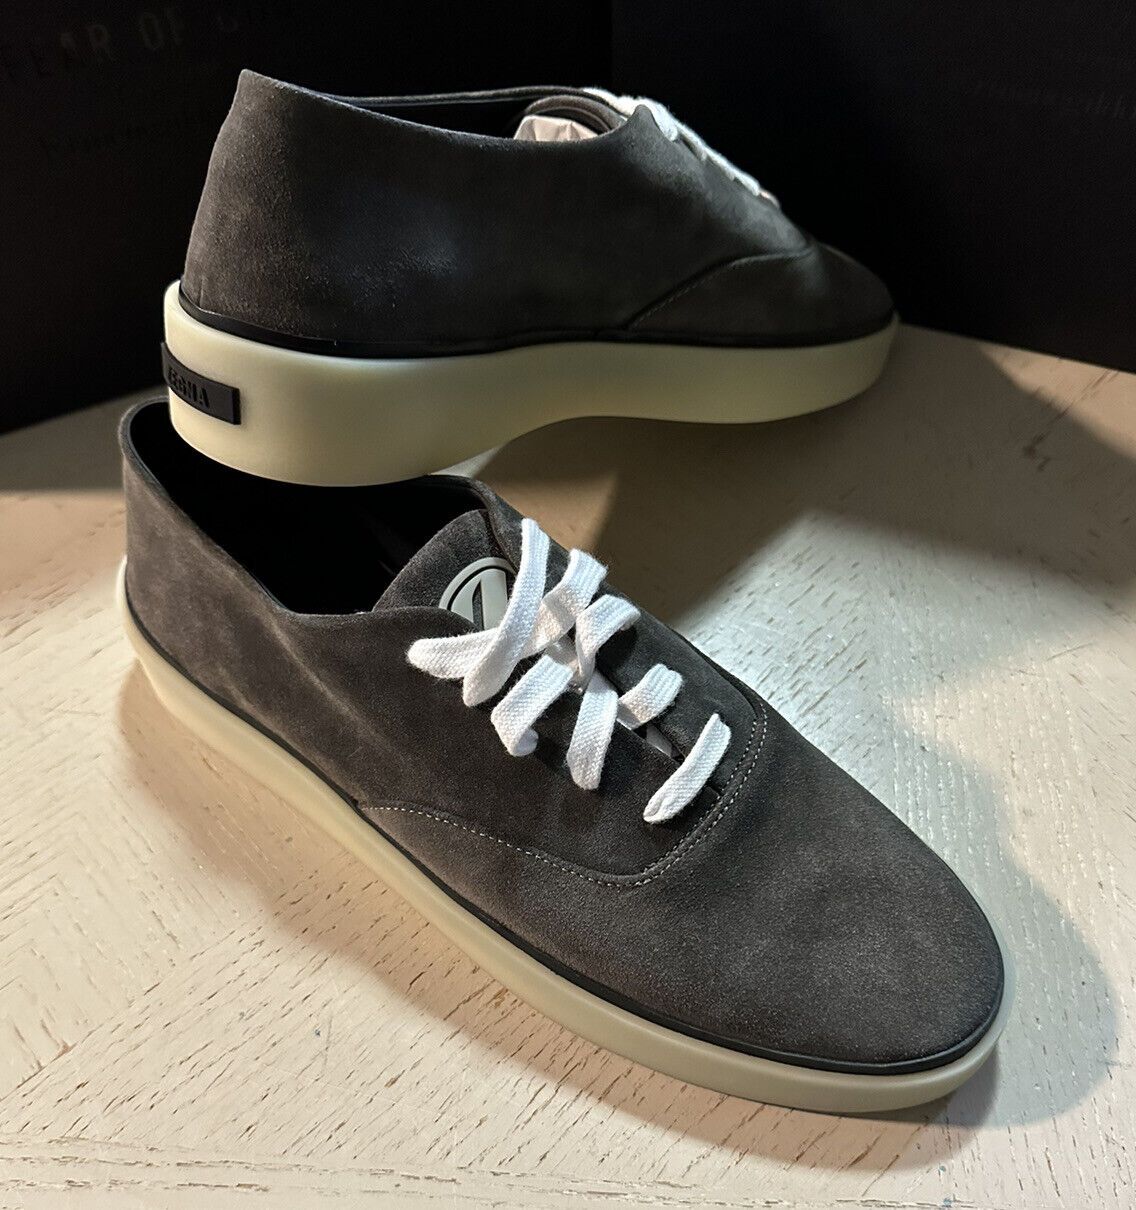 Новые замшевые/кожаные кроссовки Ermenegildo Zegna за 595 долларов США DK Grey 14 US